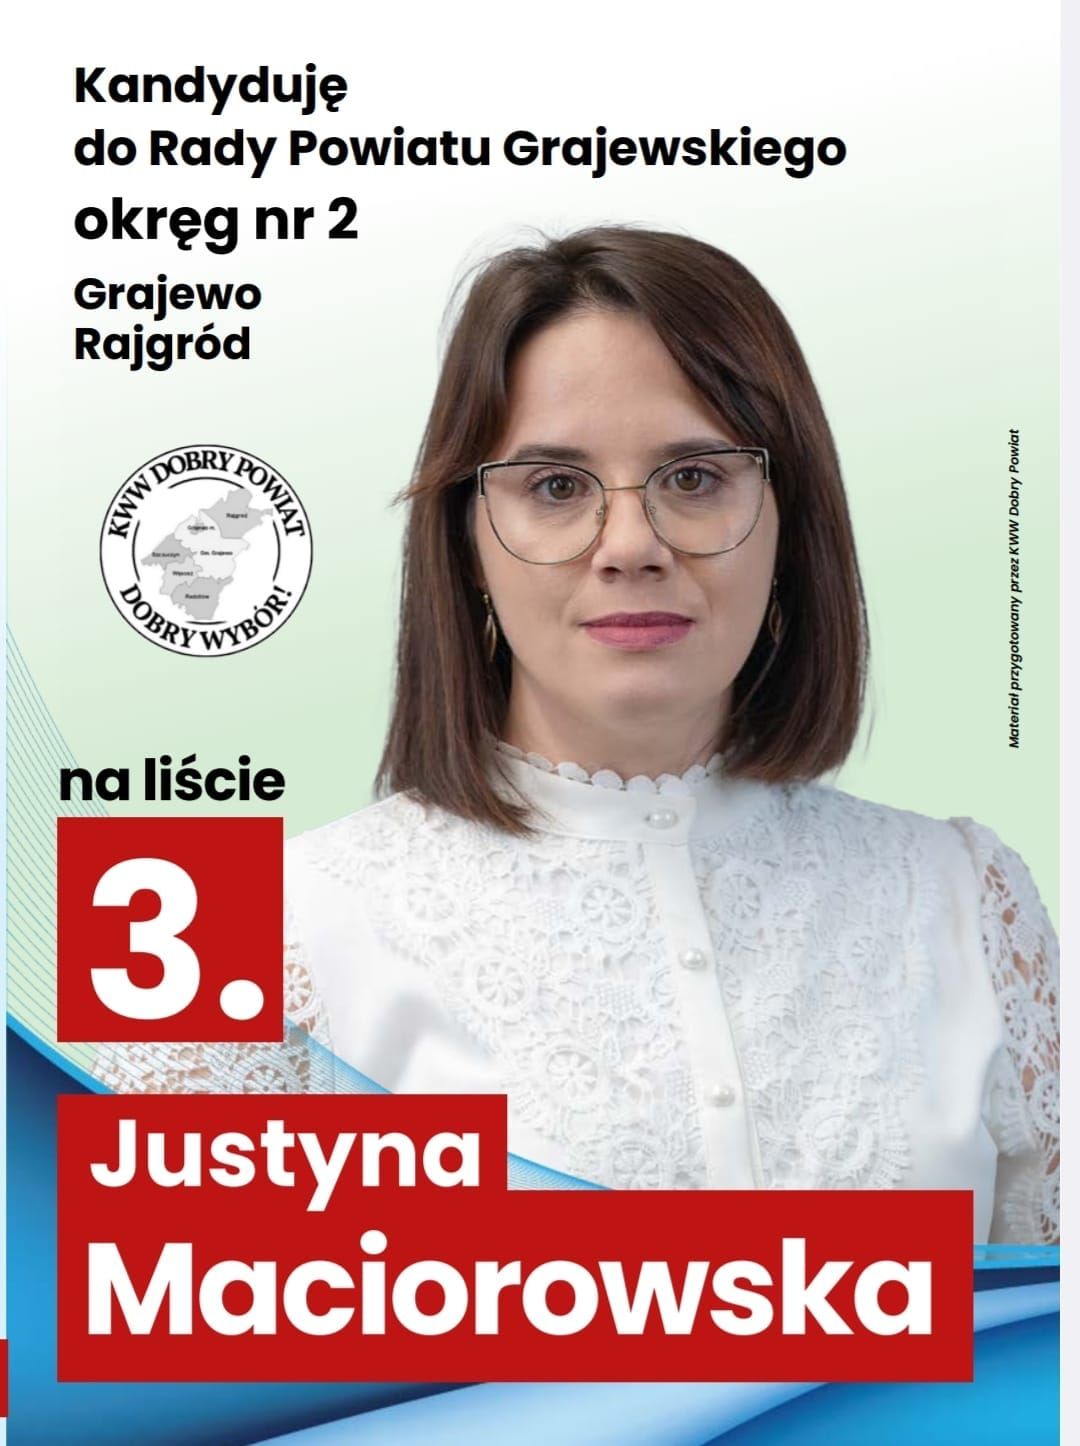 Justyna z 